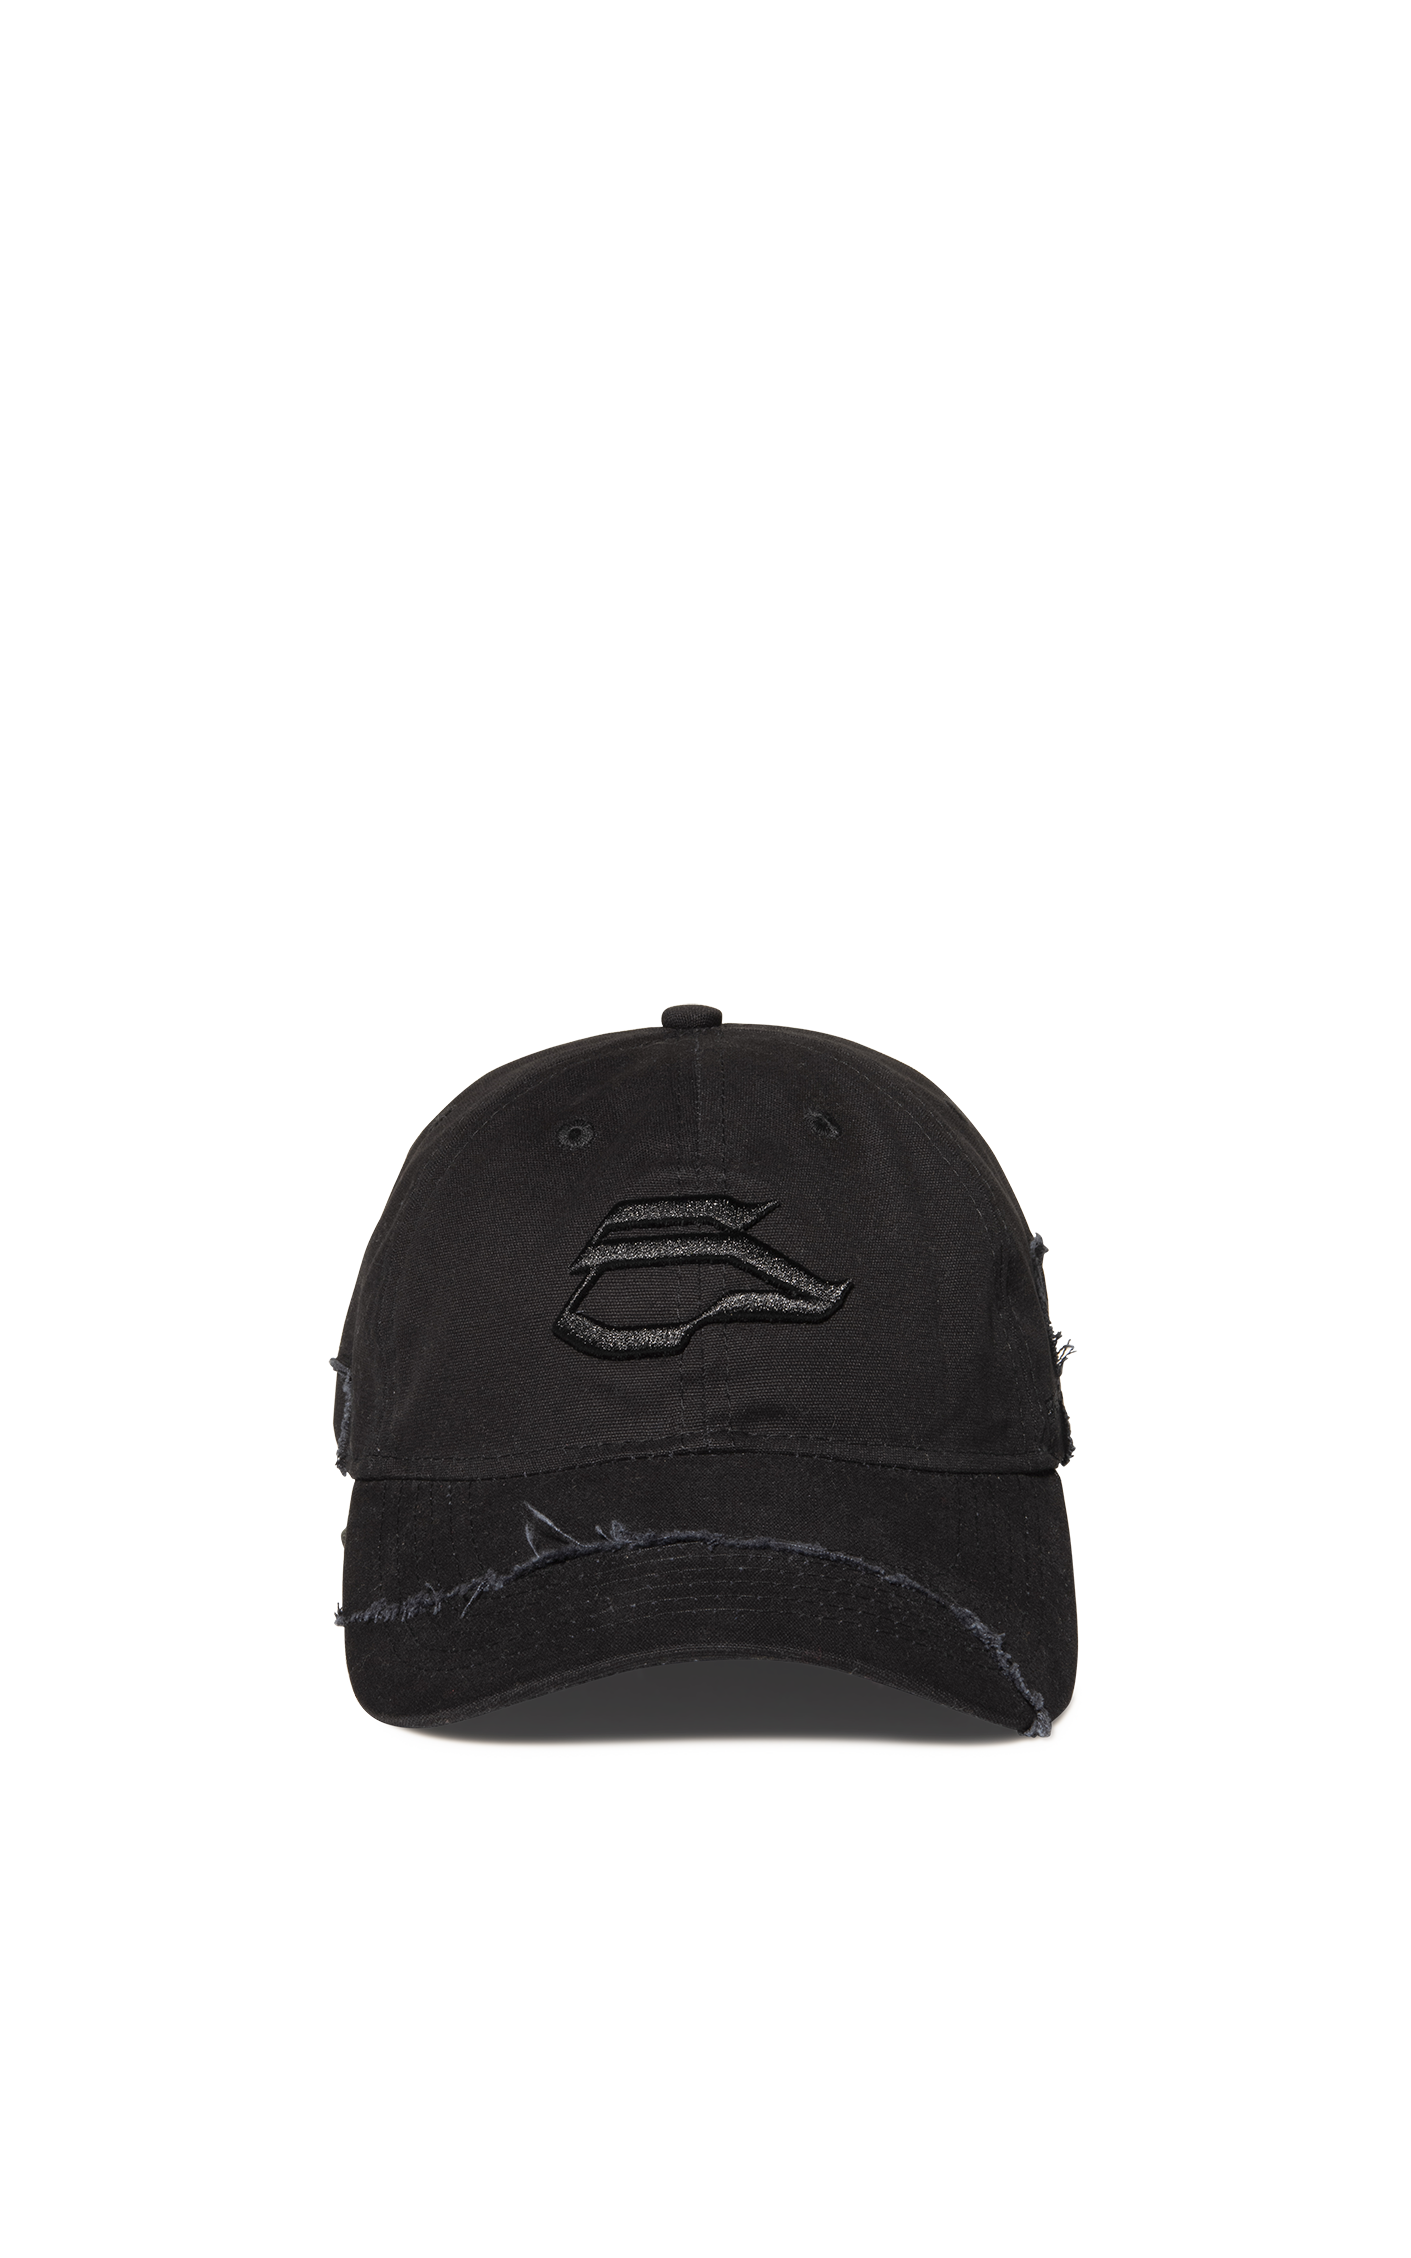 DISTRESSED BLACK CAMO  CAP